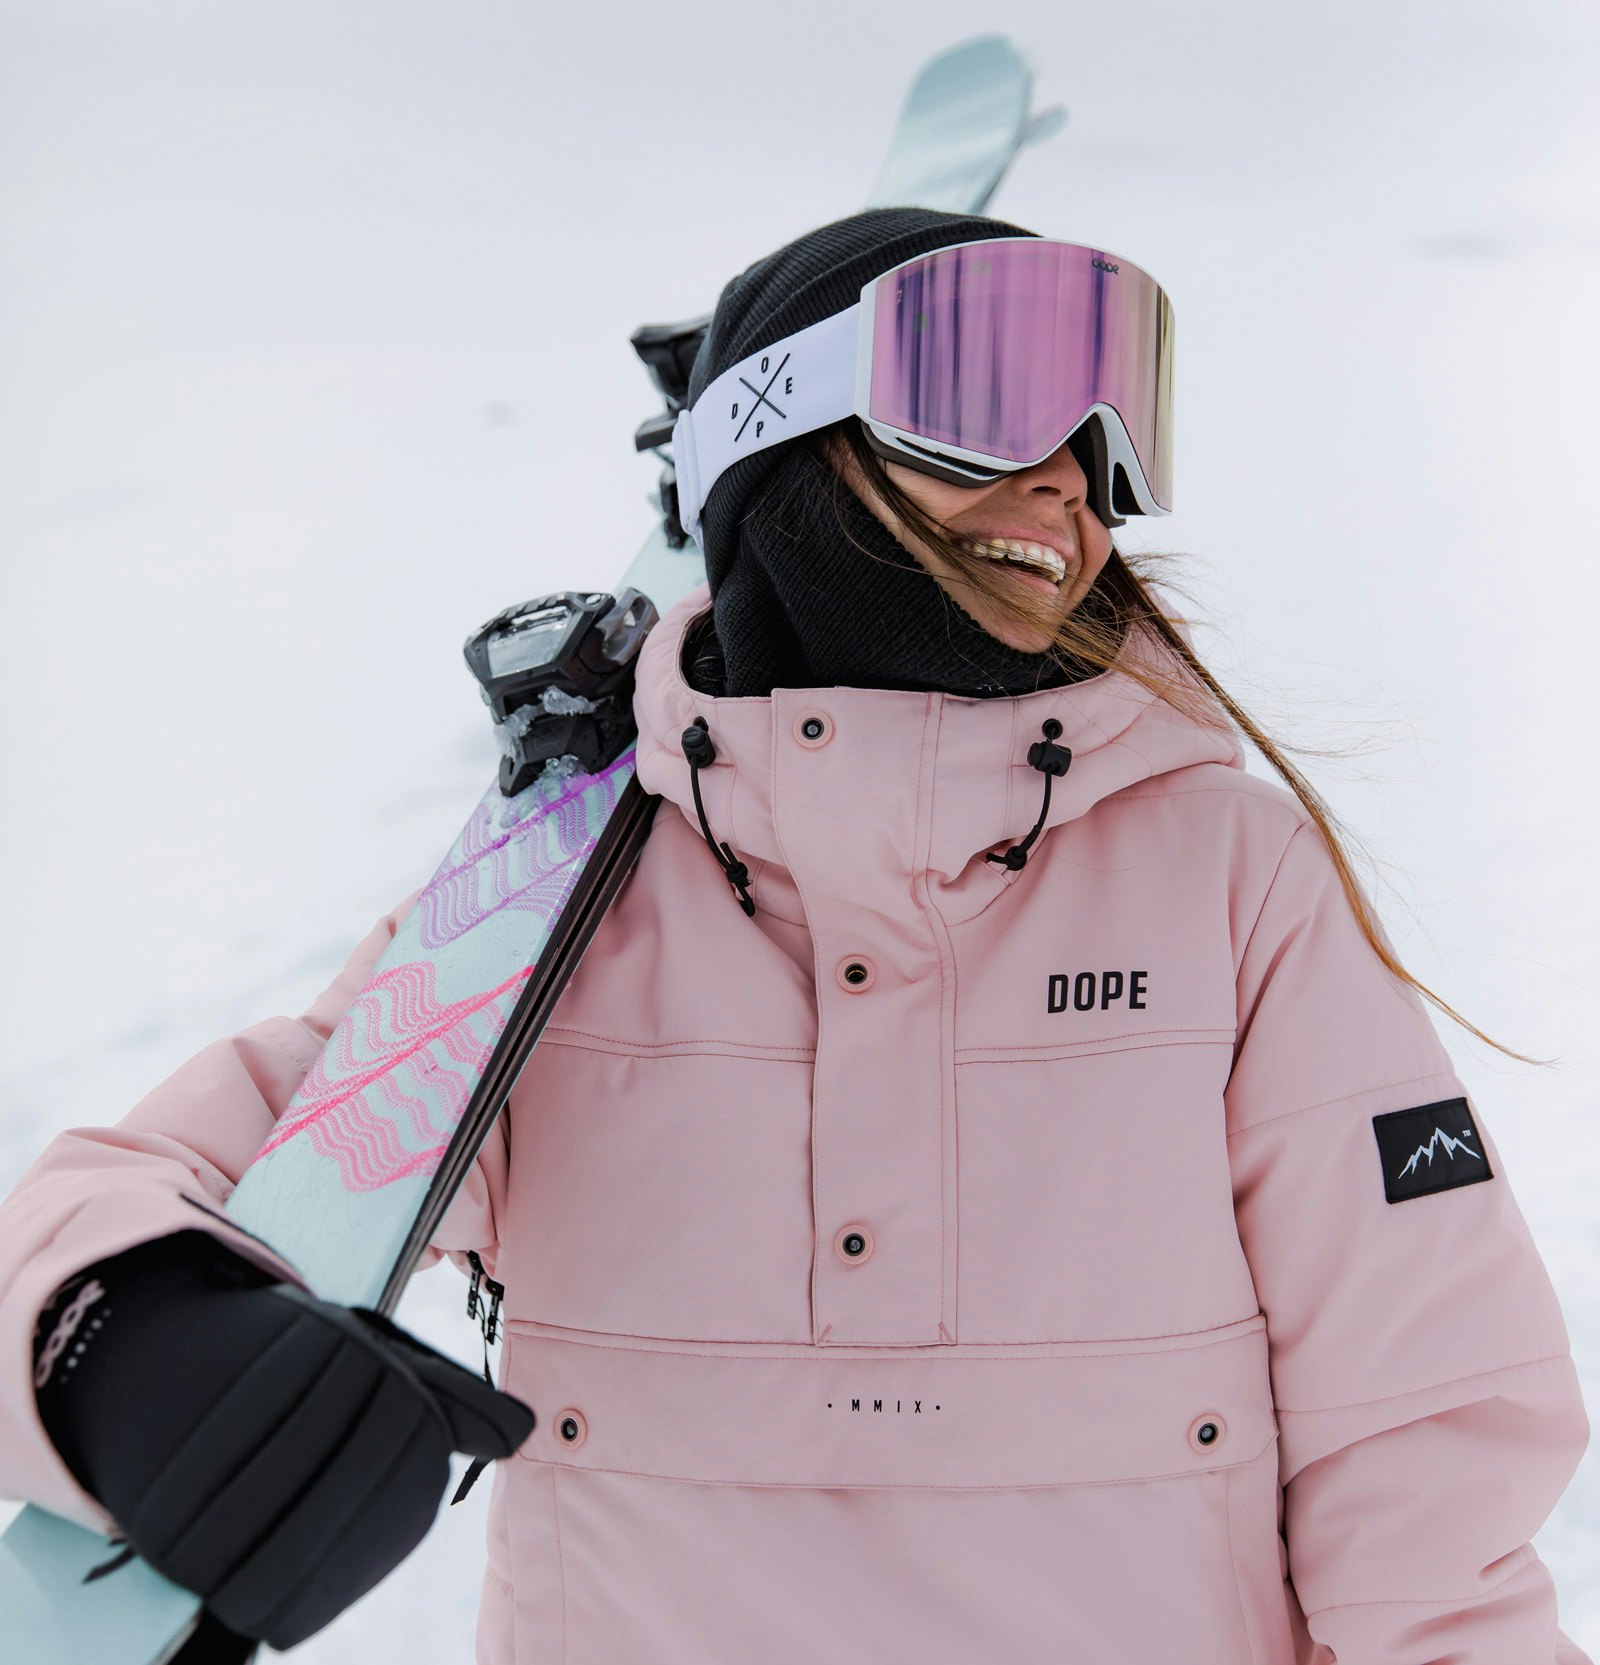 Comment skier avec des lunettes de vue | Ridestore Magazine